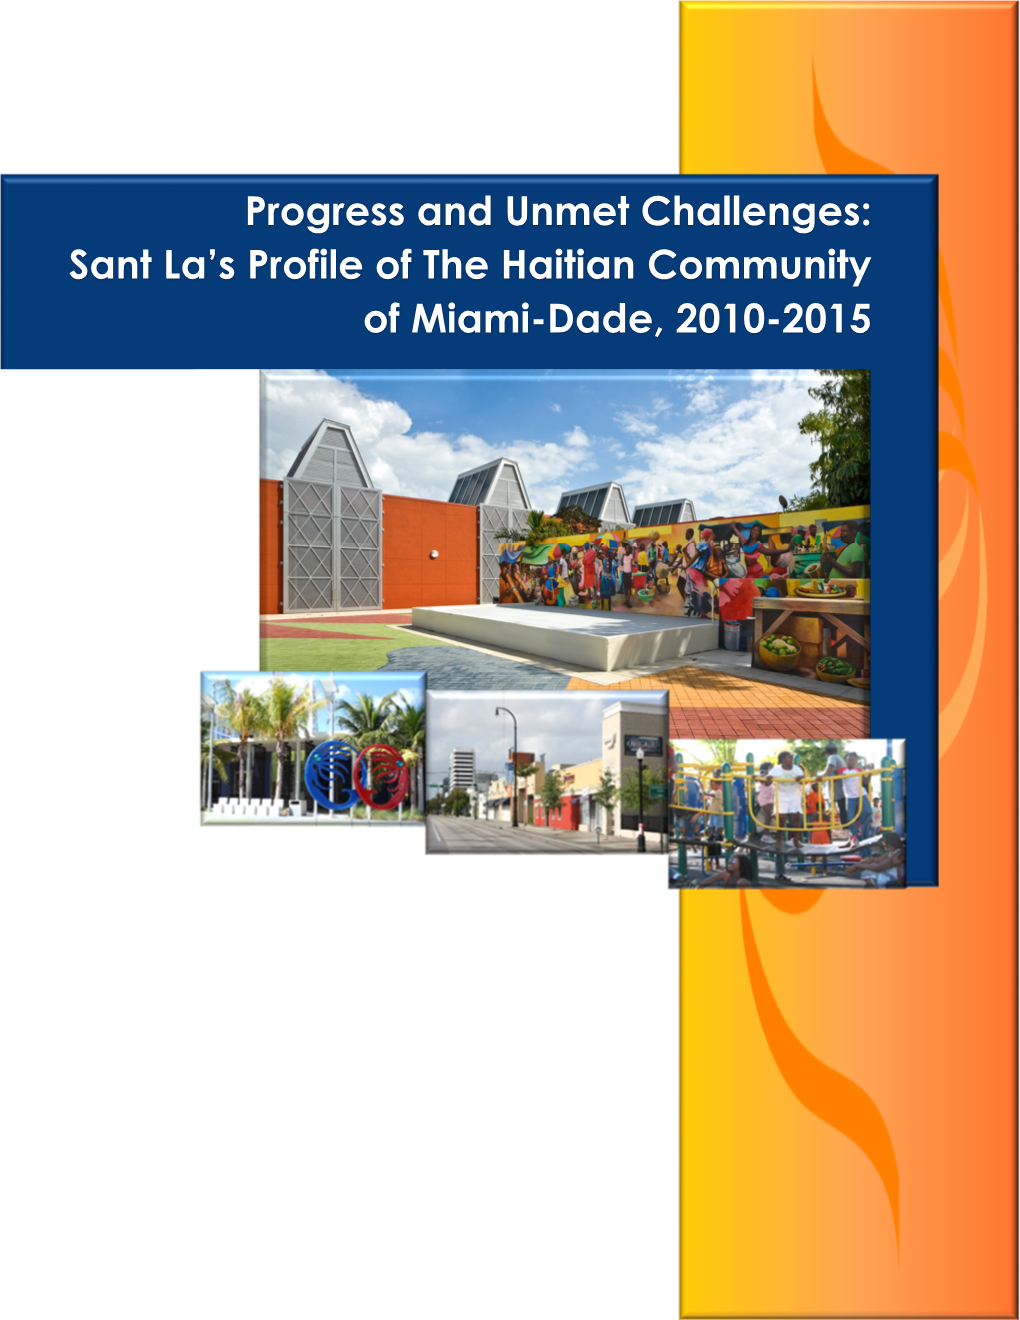 Sant La's Profile of the Haitian Community of Miami-Dade, 2010